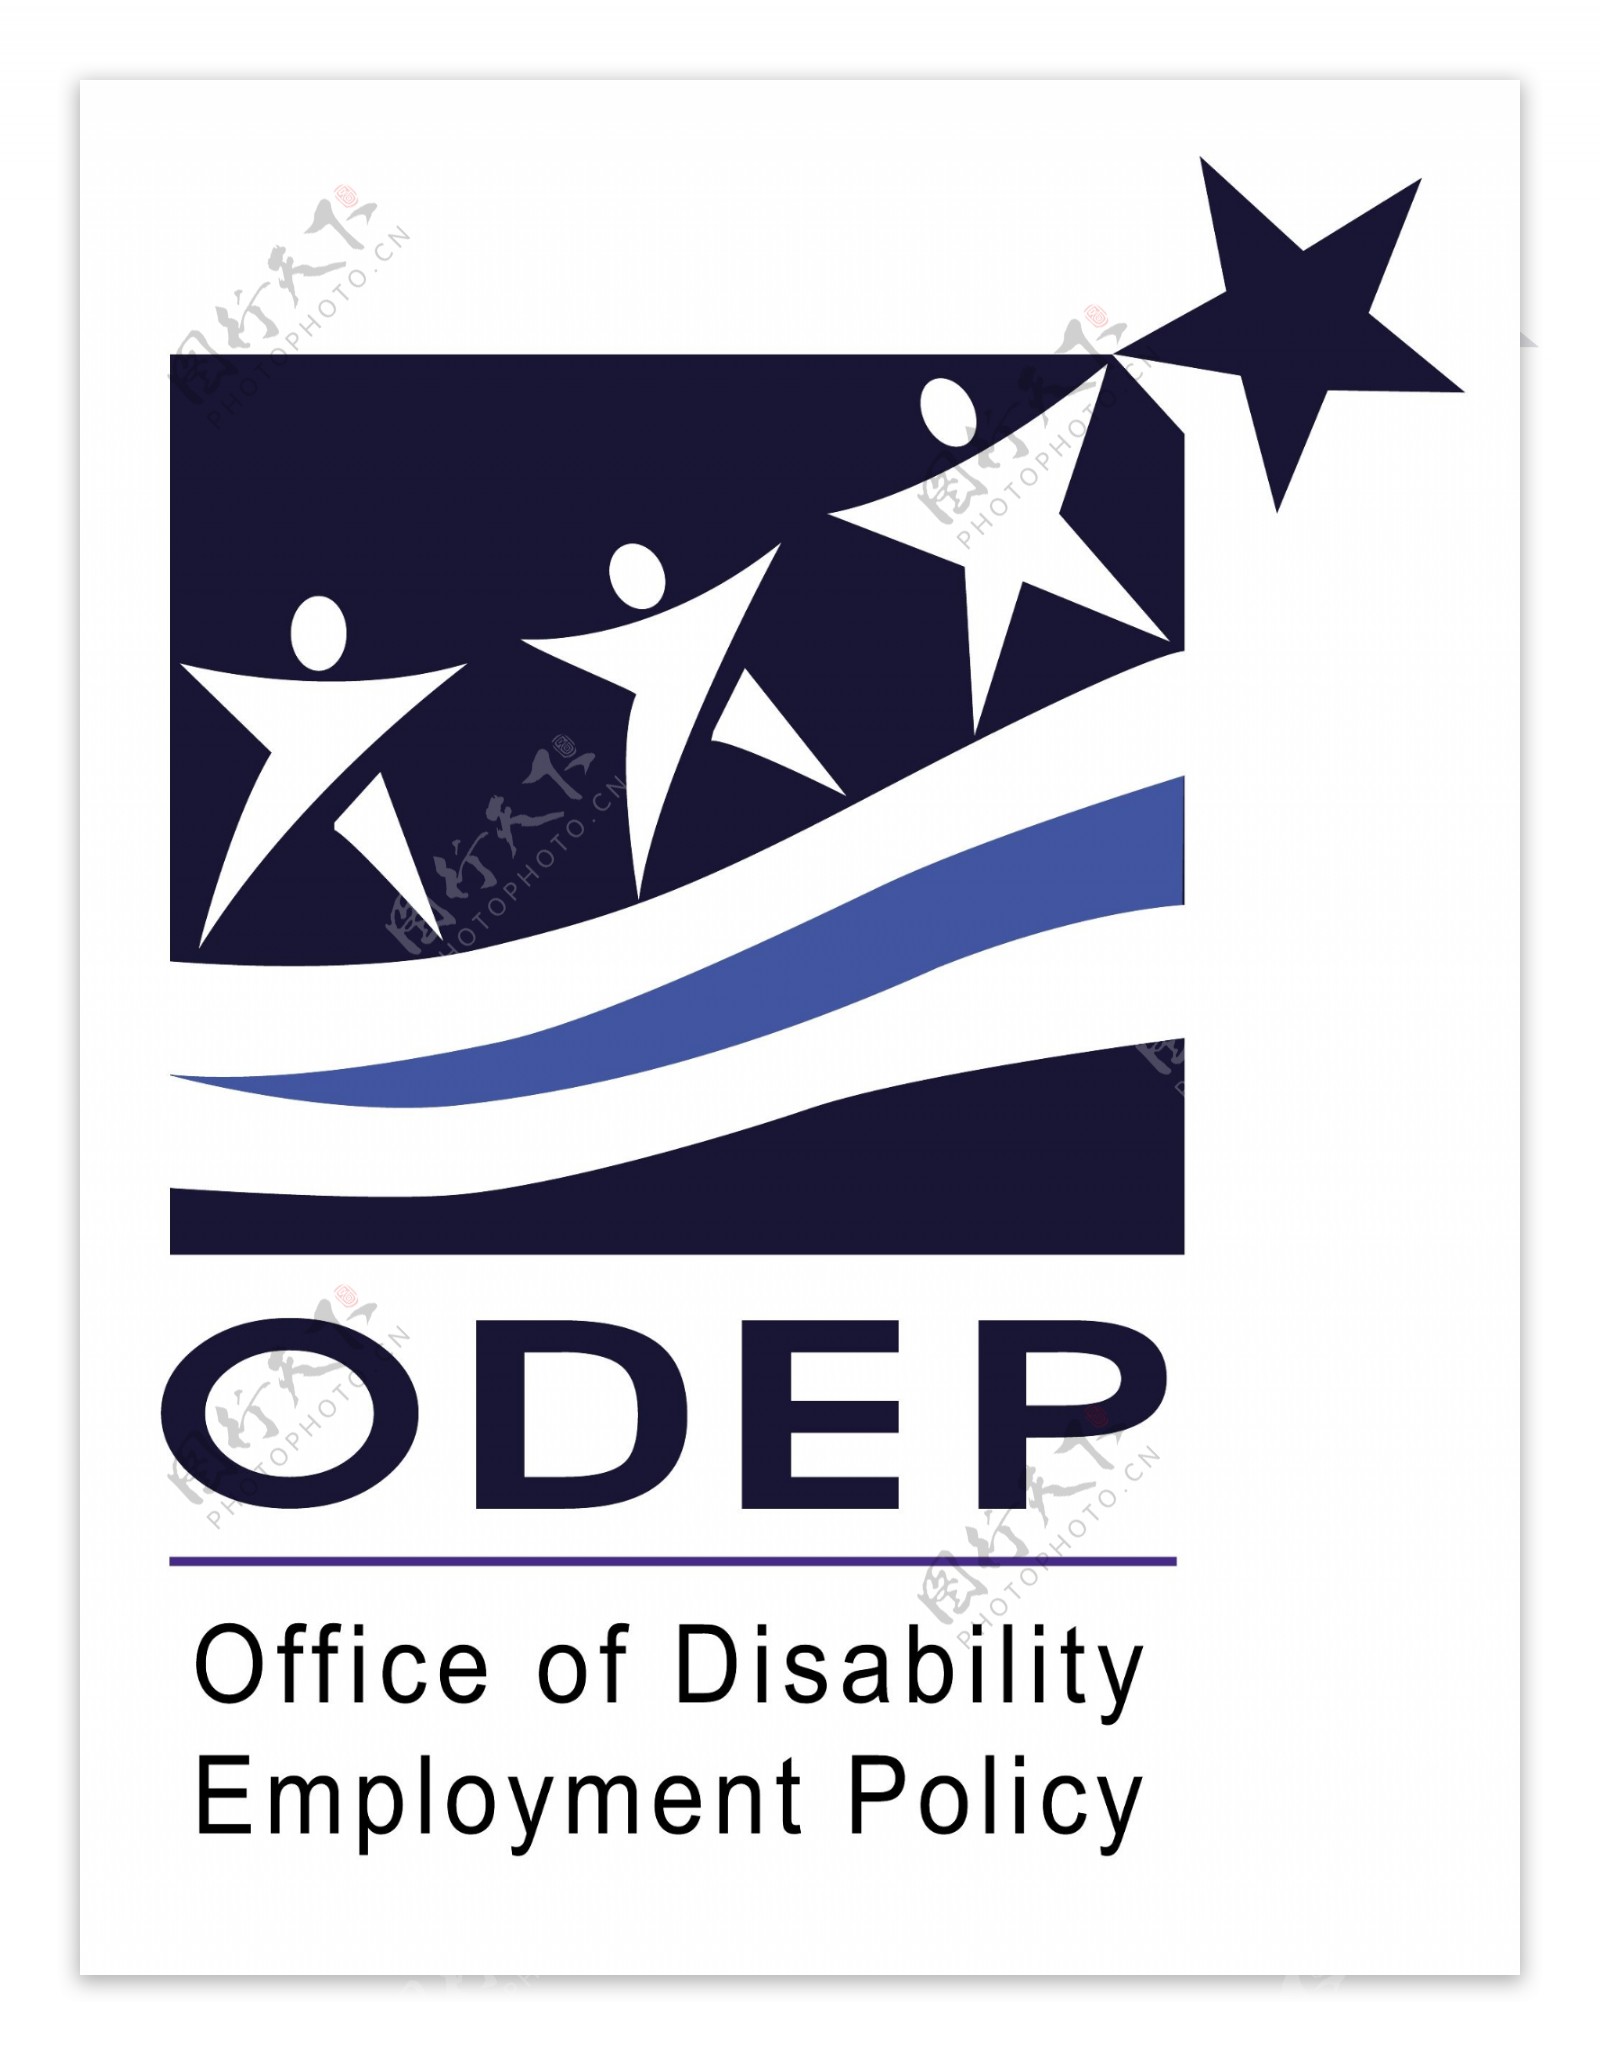 残疾人就业政策办公室ODEP